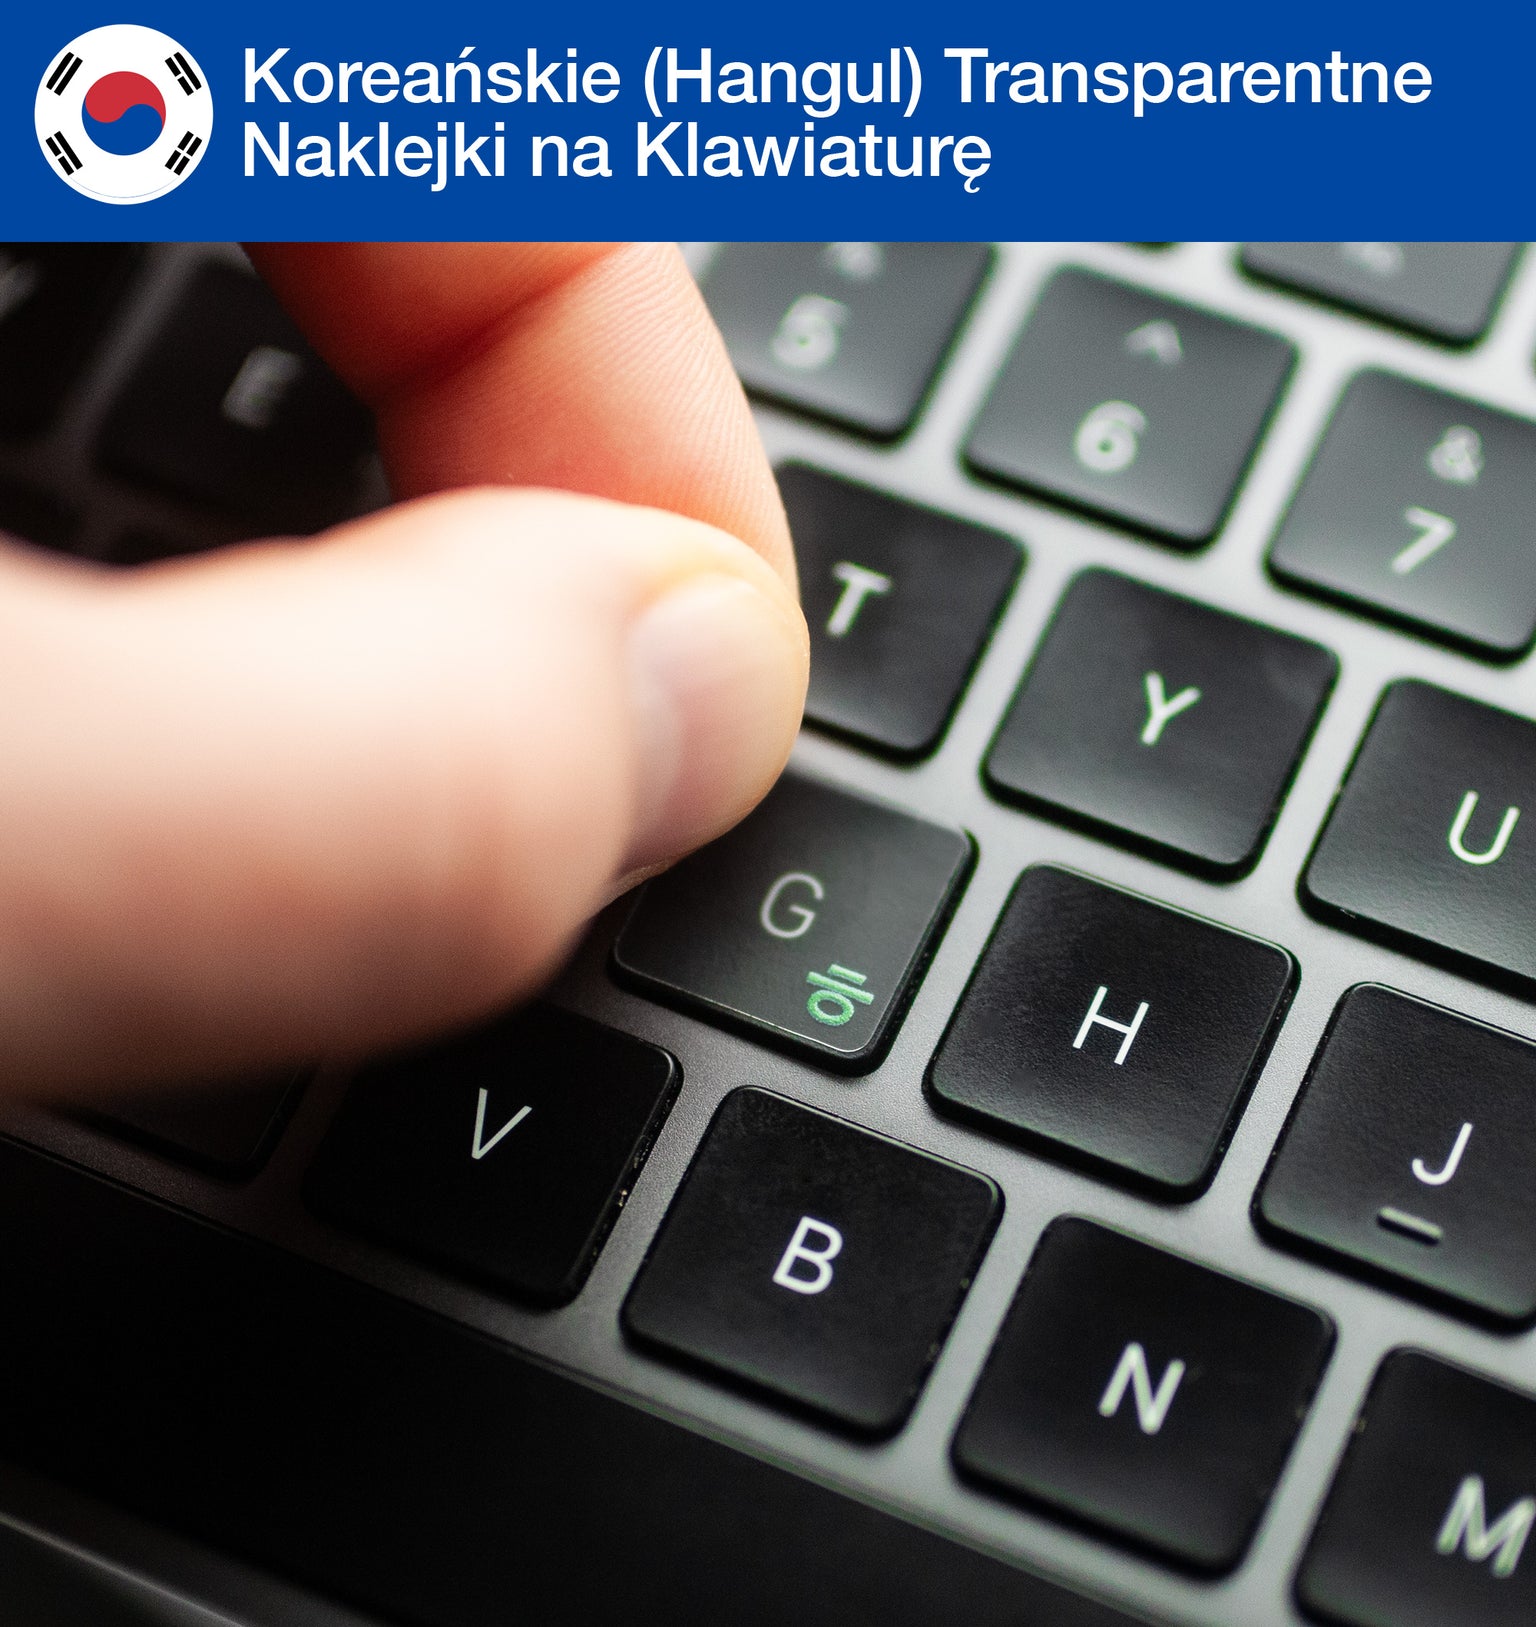 Koreańskie Hangul transparentne naklejki na klawiaturę